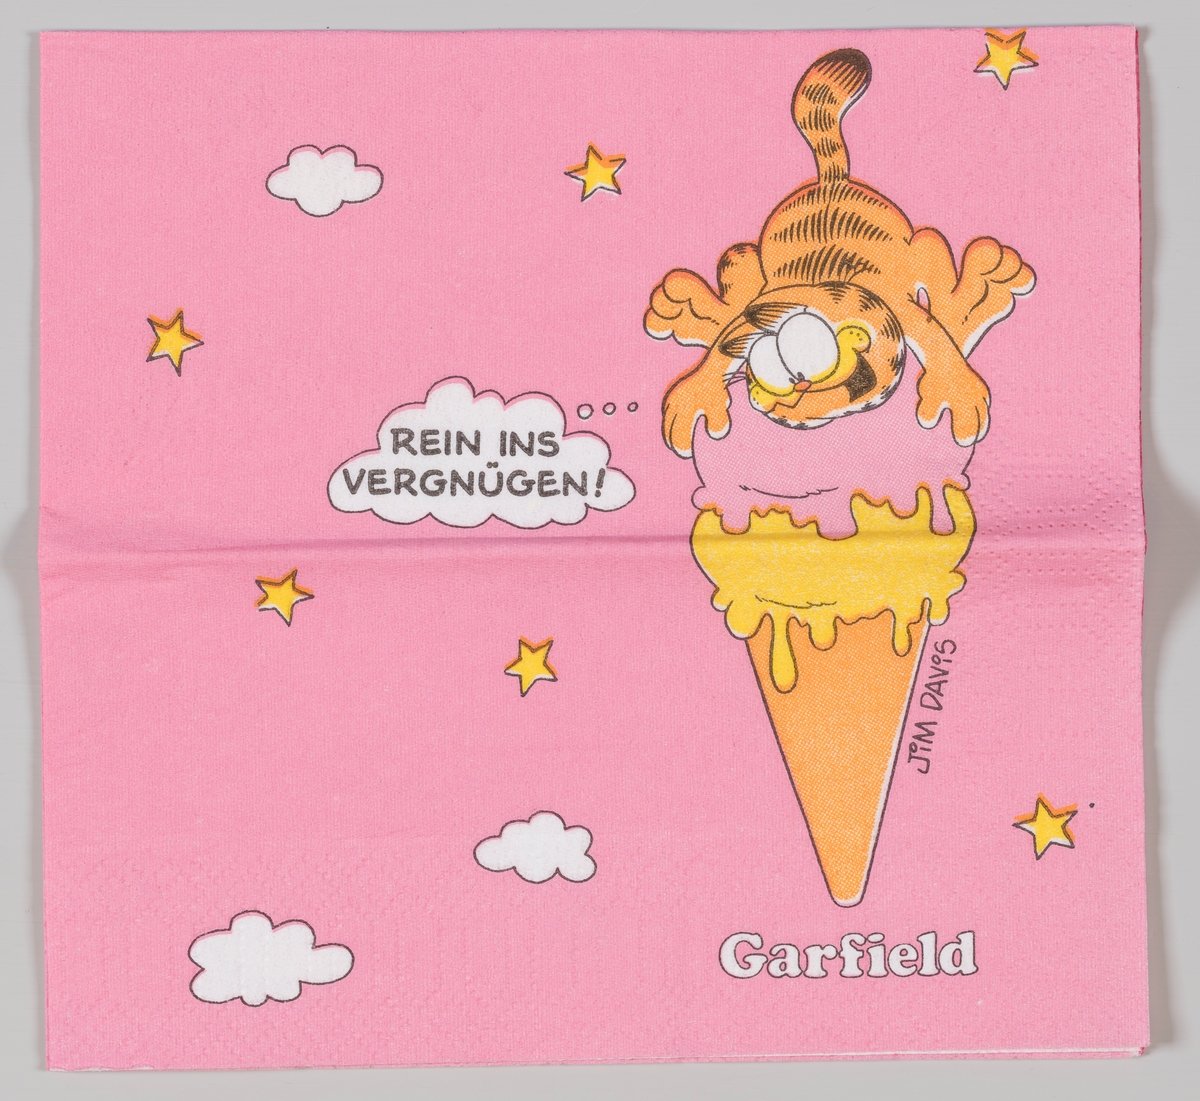 Pusur ligger opp på en diger isvaffel.

Pusur (amerikansk Garfield) er en tegneseriefigur skapt av Jim Davis i 1978.